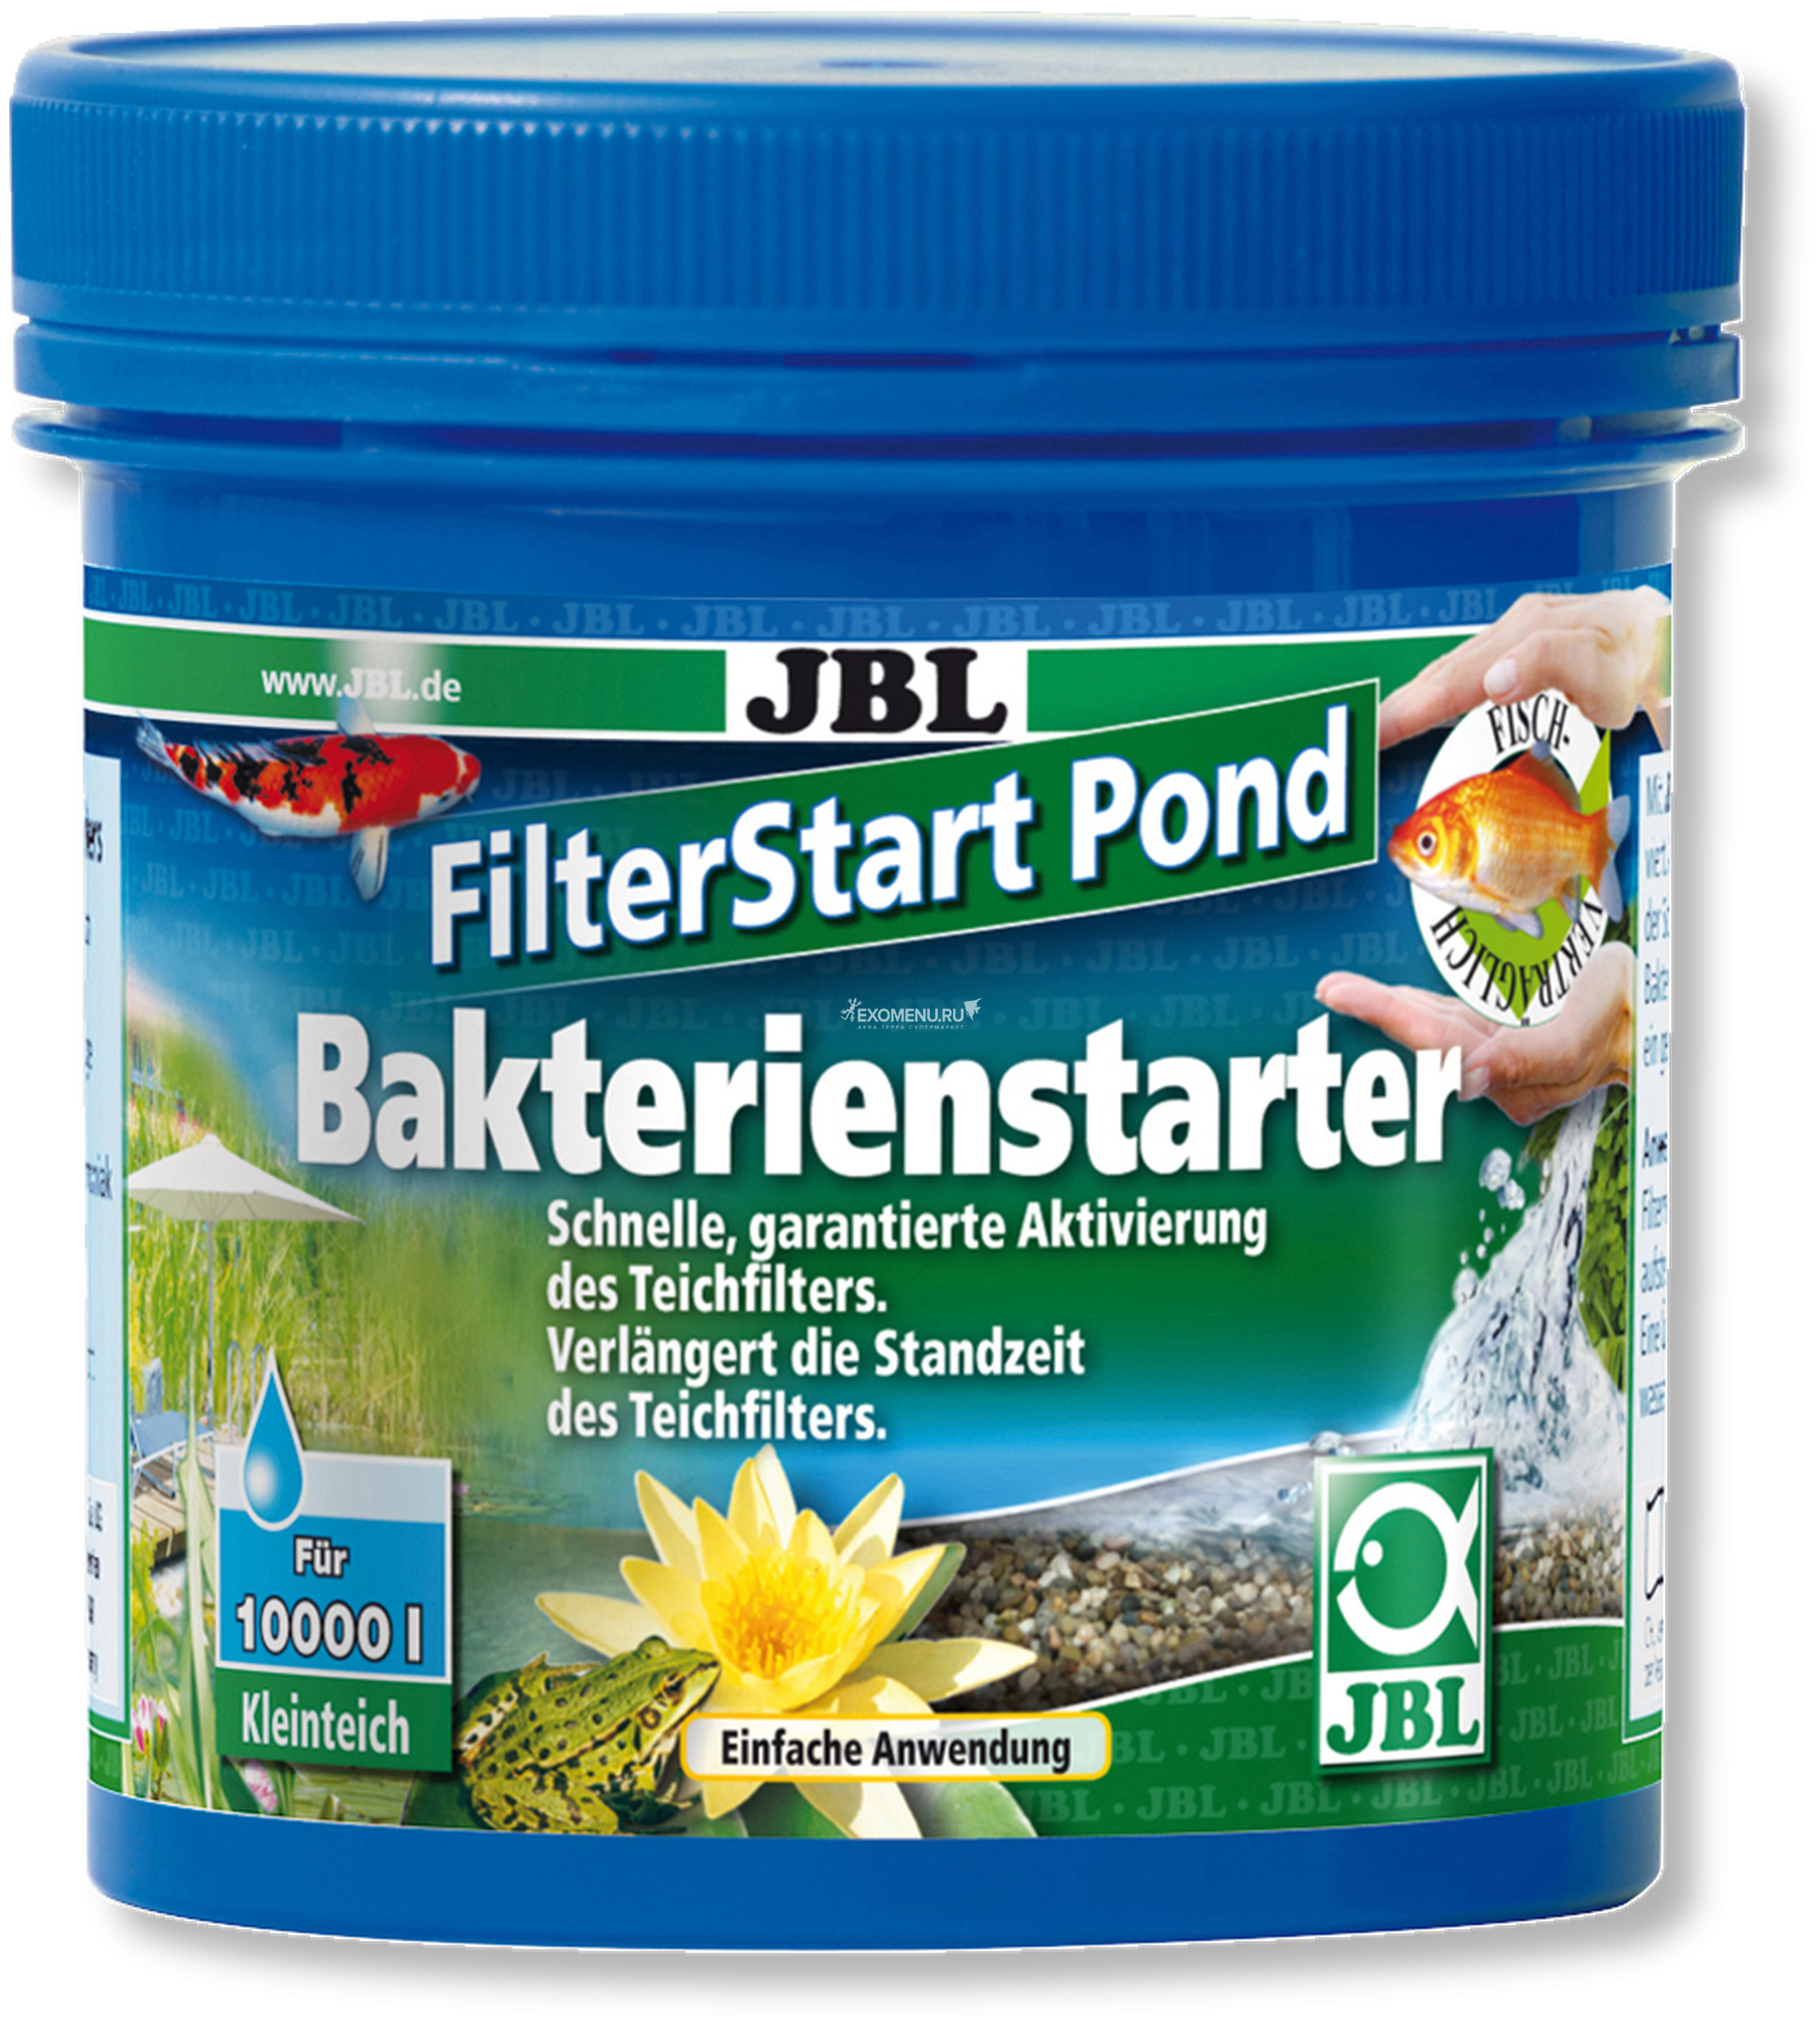 JBL FilterStart Pond - Препарат, содержащий бактерии для активации прудовых фильтров, 250 г на 10000 литров воды